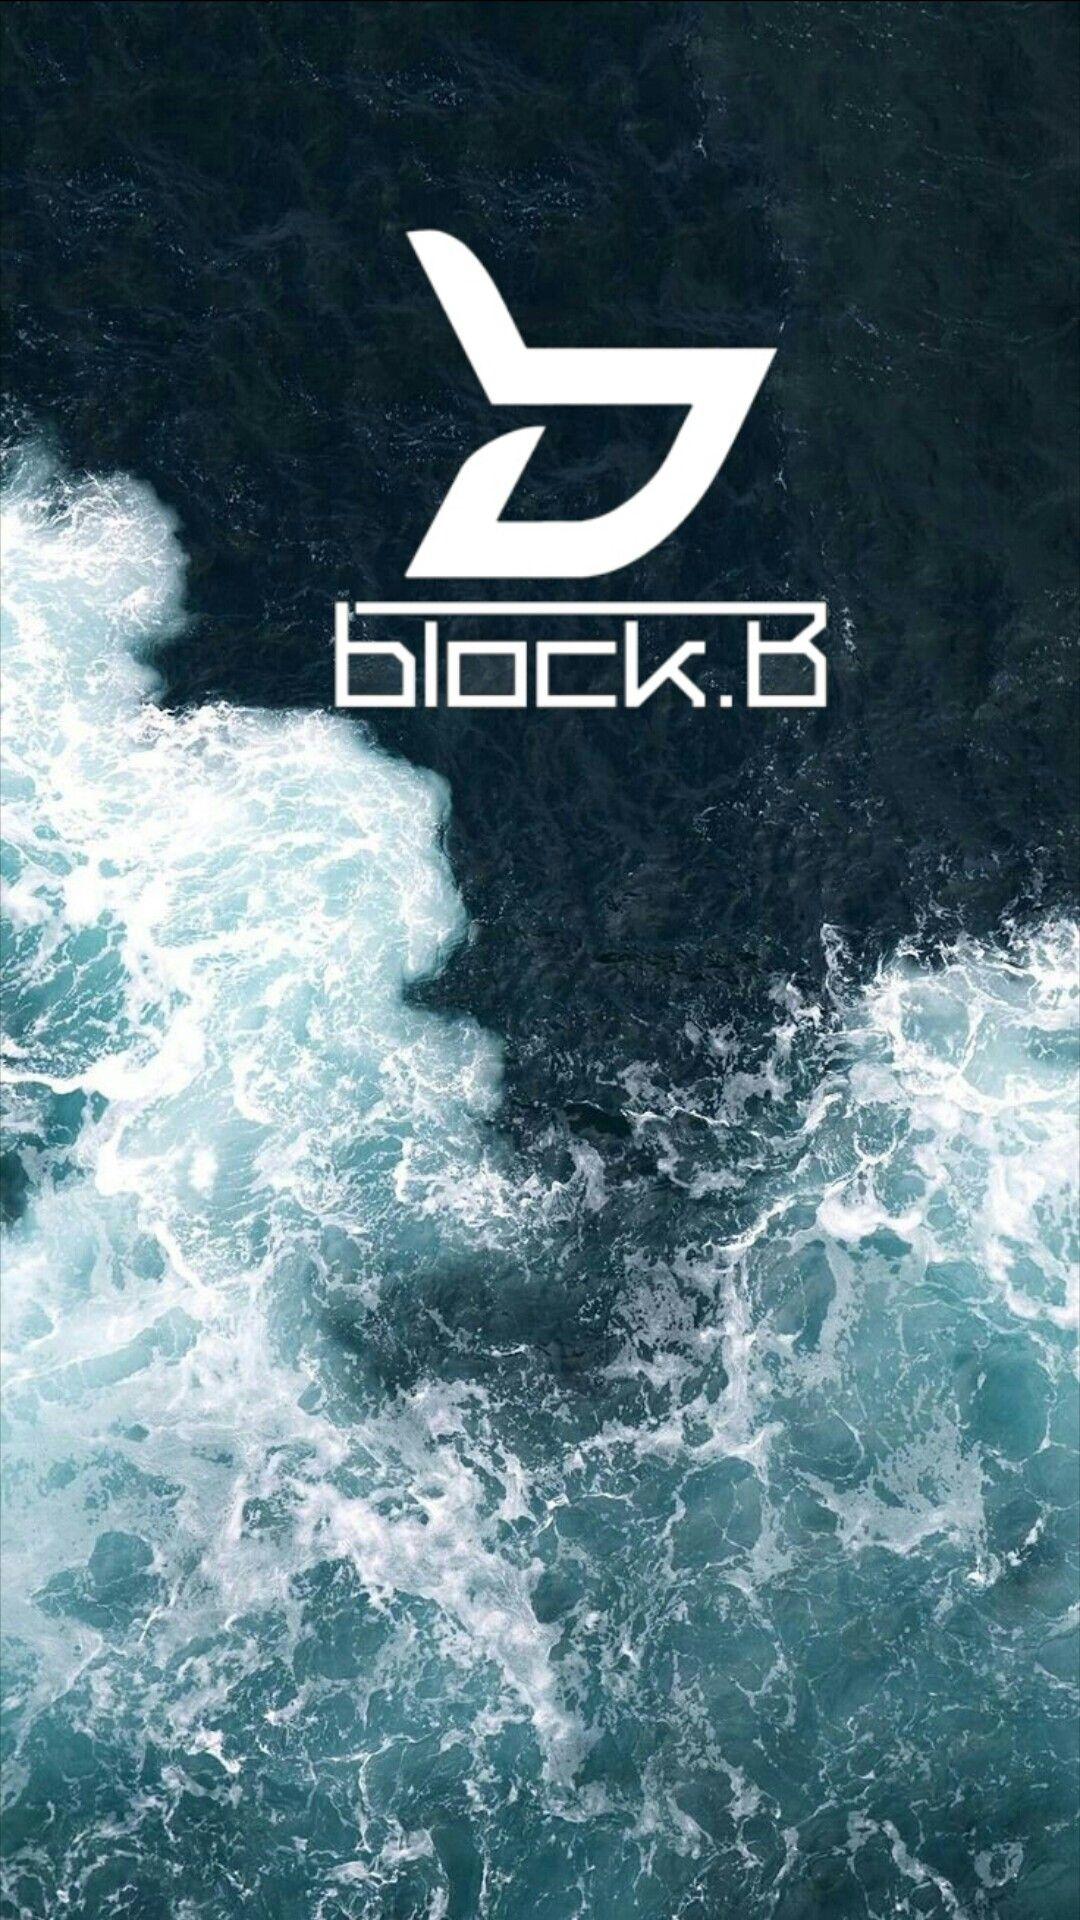 Block B Logo - Block B kpop aesthetic wallpaper iphone tumblr | Block B (빌락비) in ...